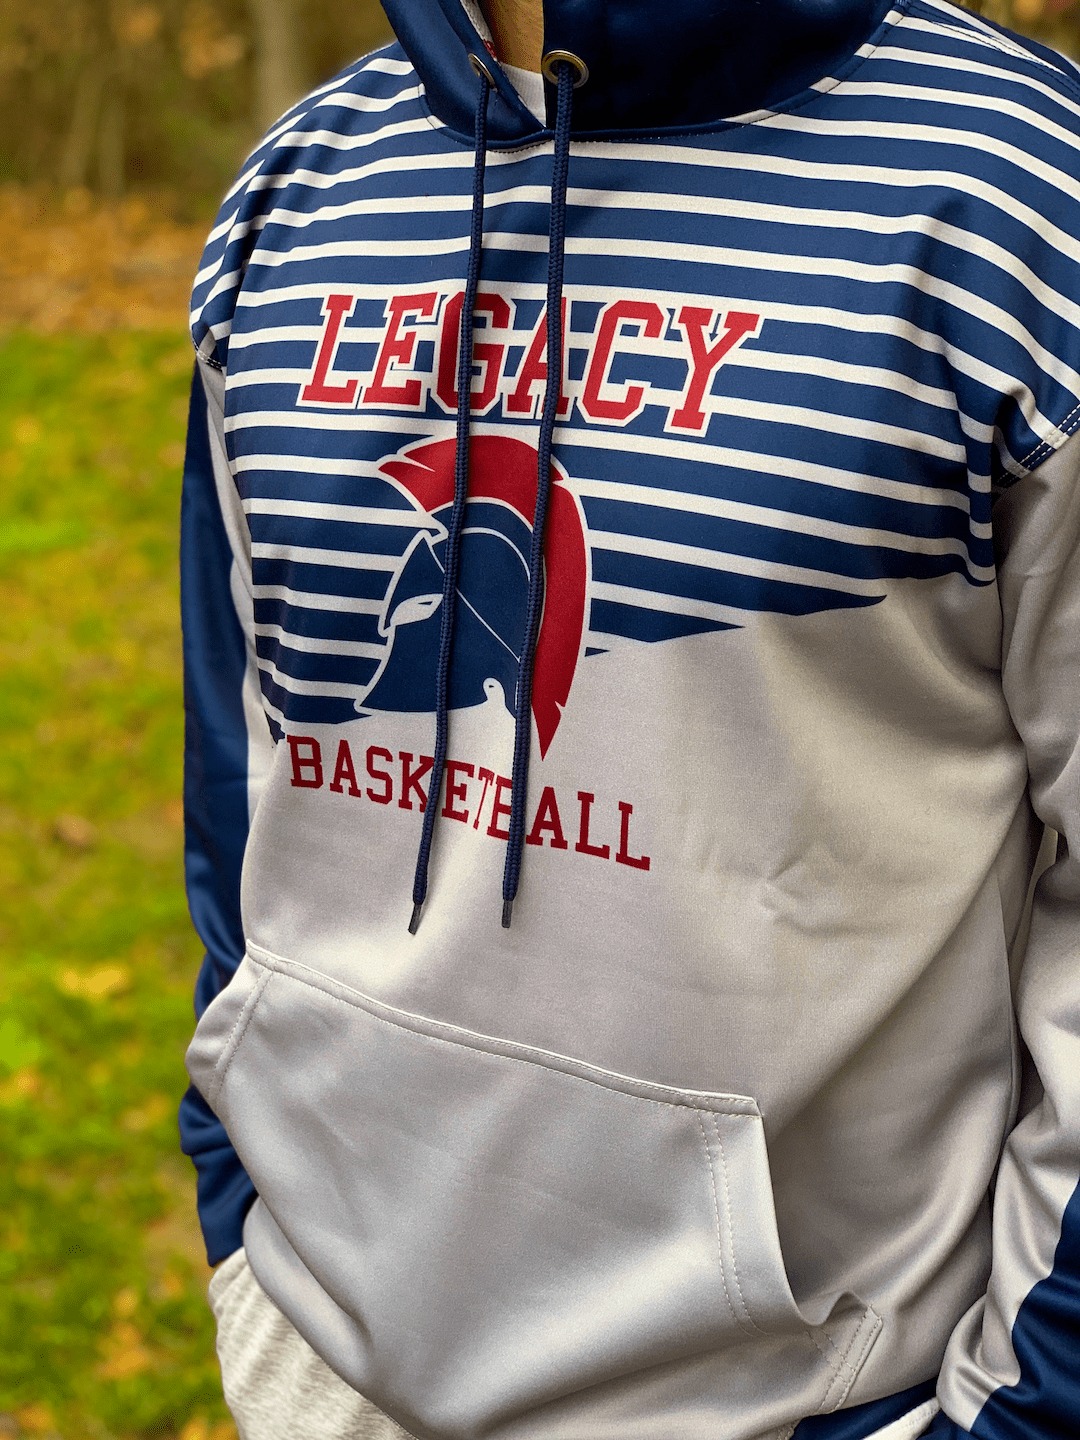 Legacy Christian Academy - Good Game Basketball Hoodie 